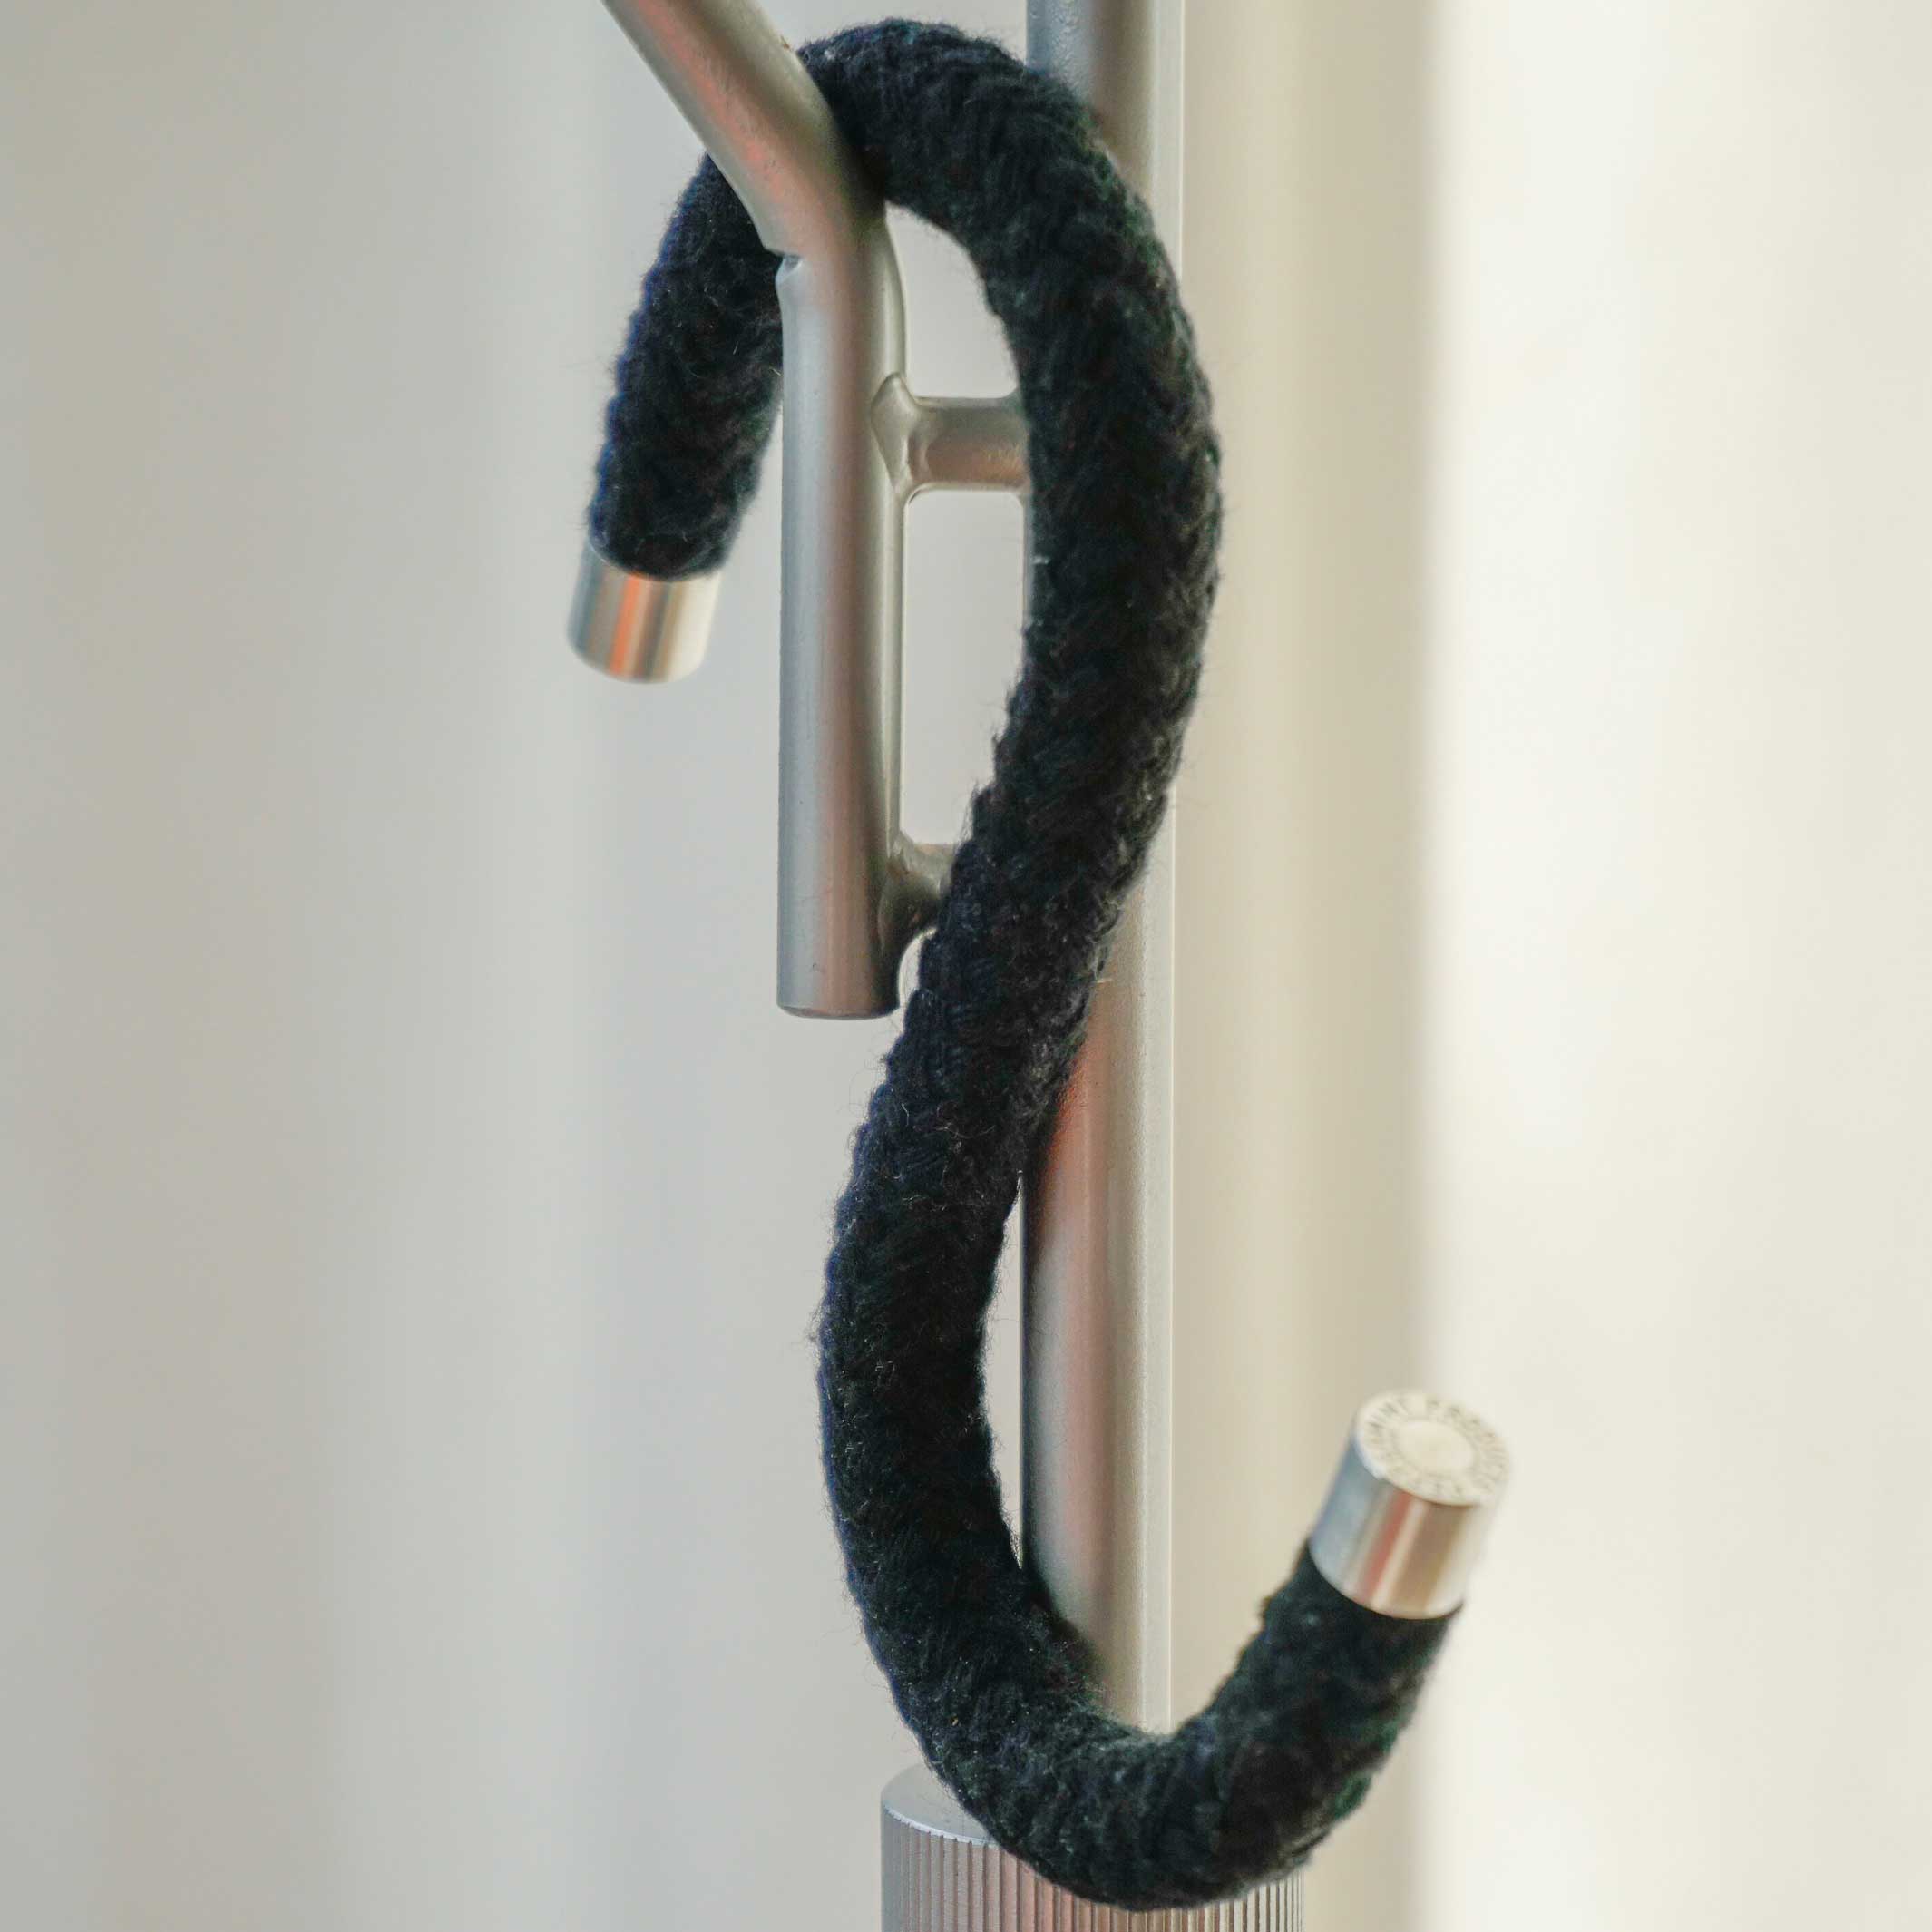 CROCHET DE CORDE Coton | CROCHETS S-CLOTHES en textile noir en corde de coton | Ensemble de 5 | Produits à la menthe poivrée